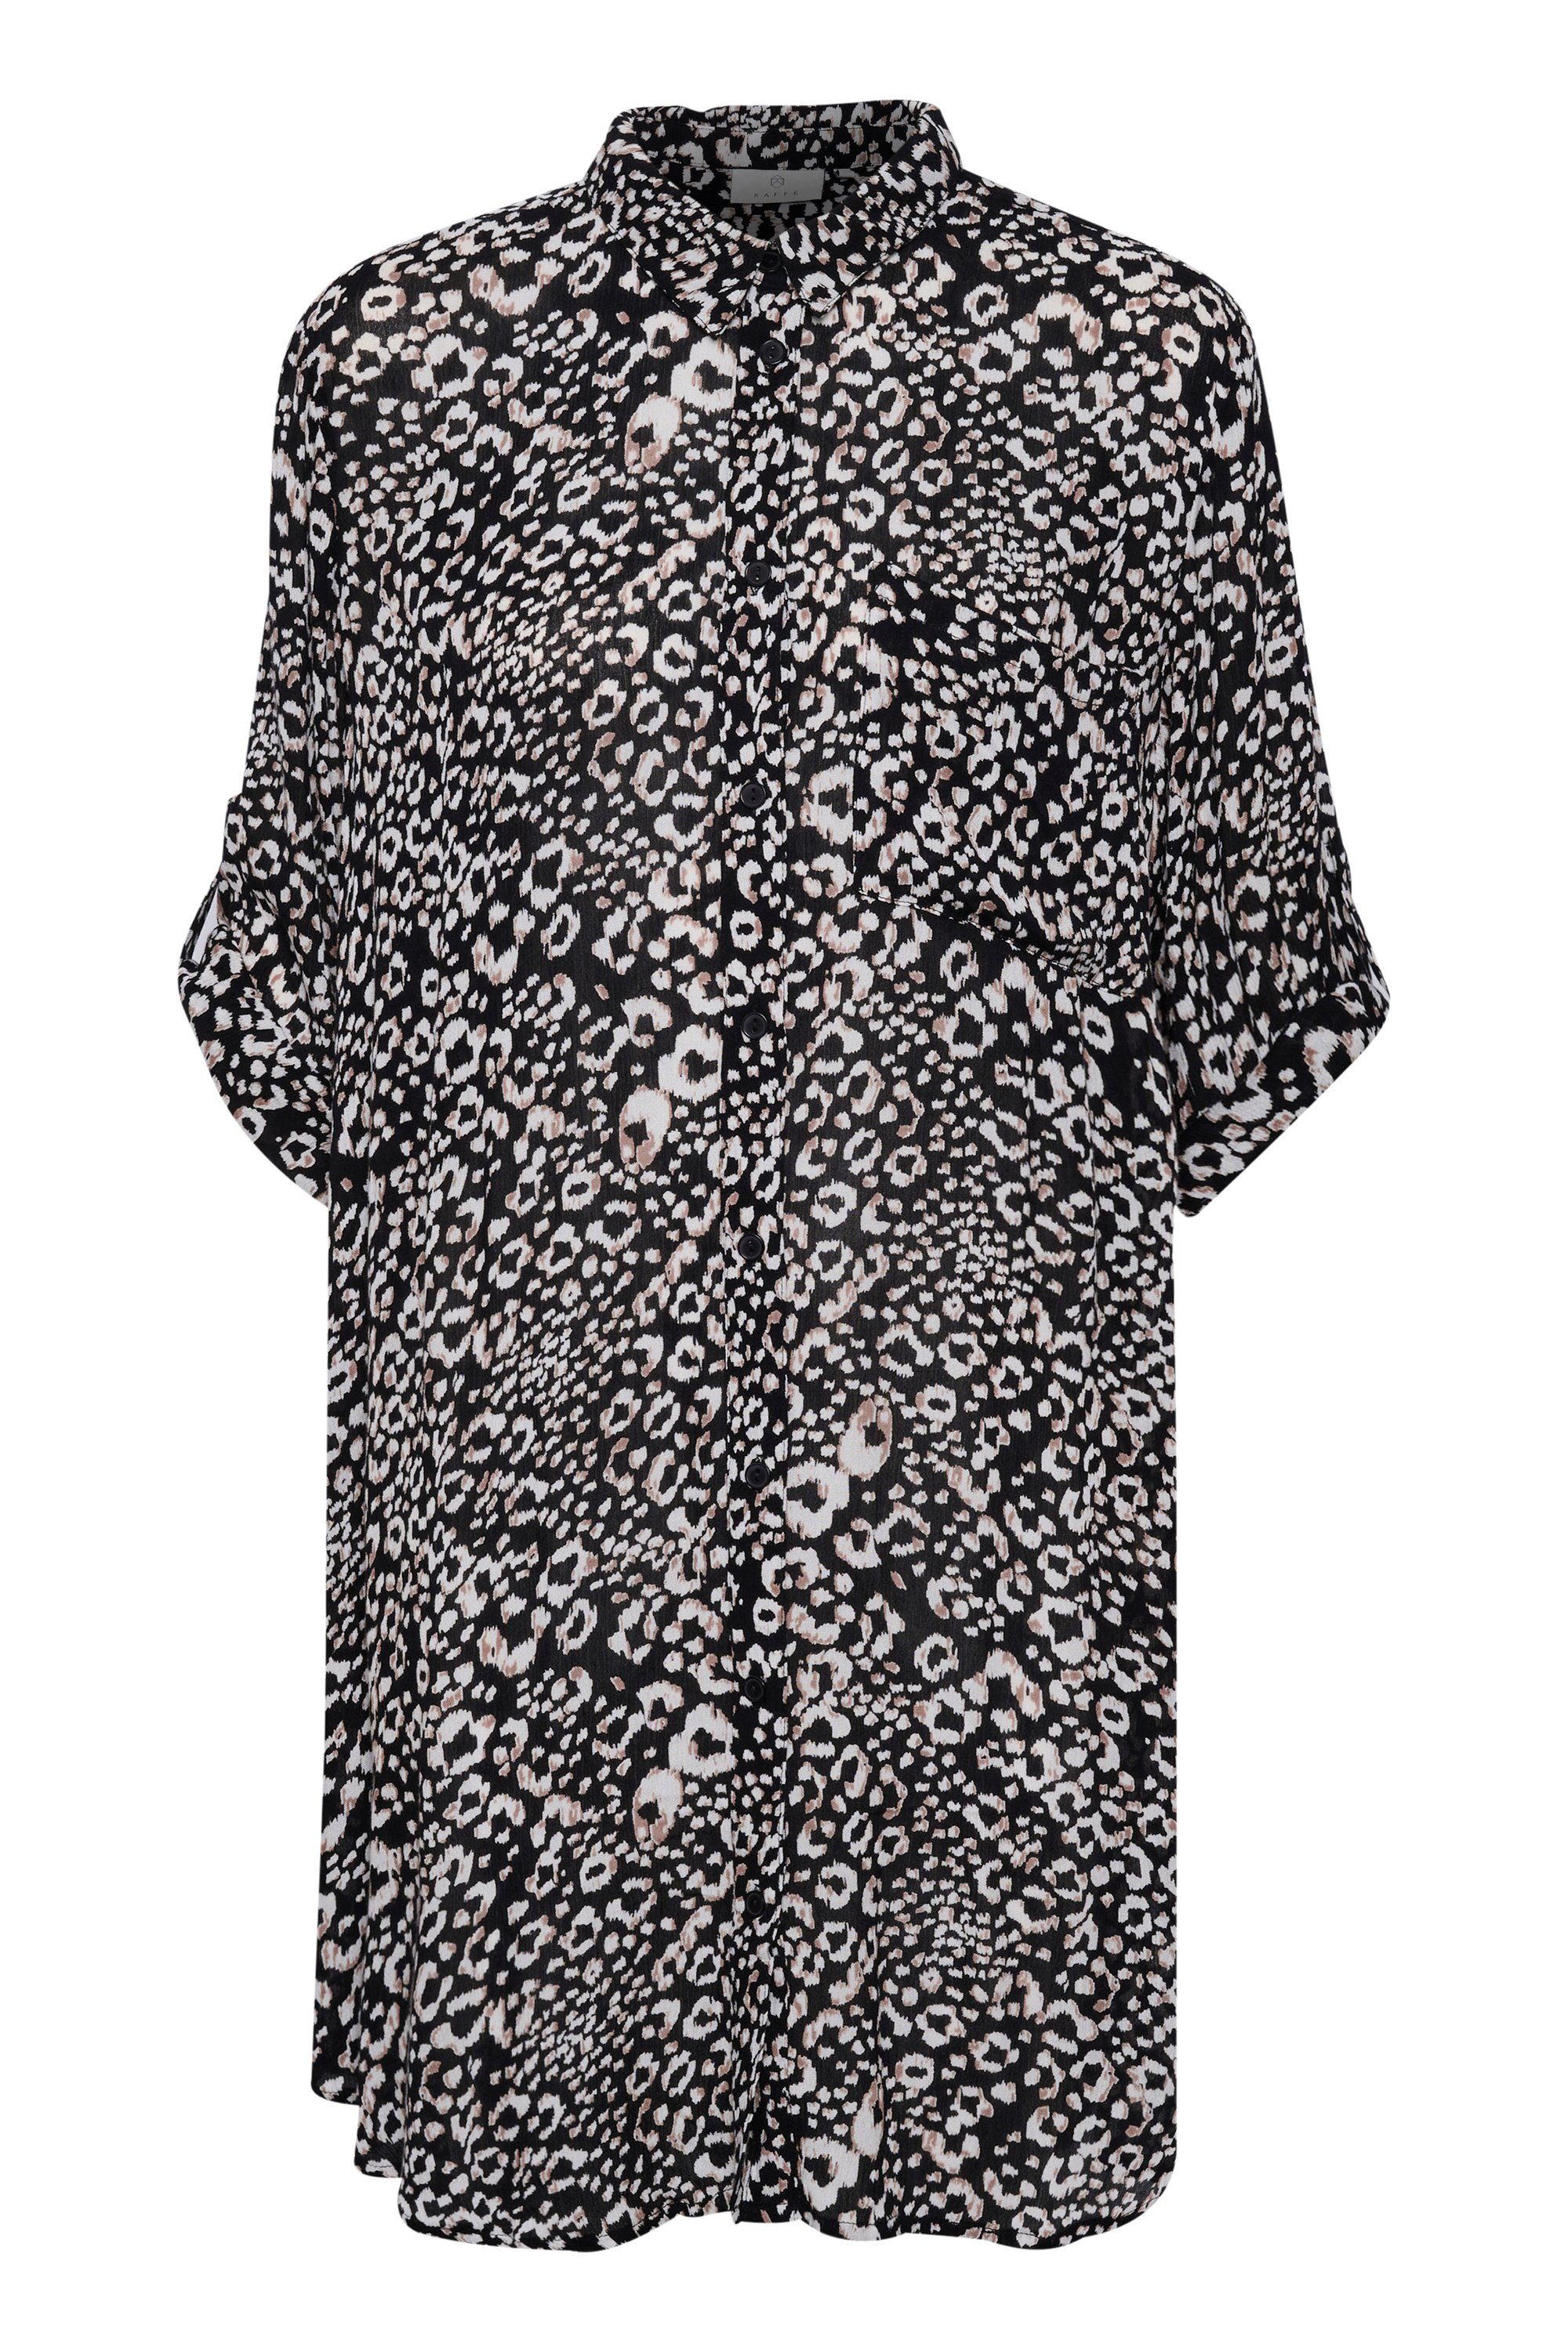 KAFFE Jerseykleid Kleid KAmarita Black/Chalk Leo Print